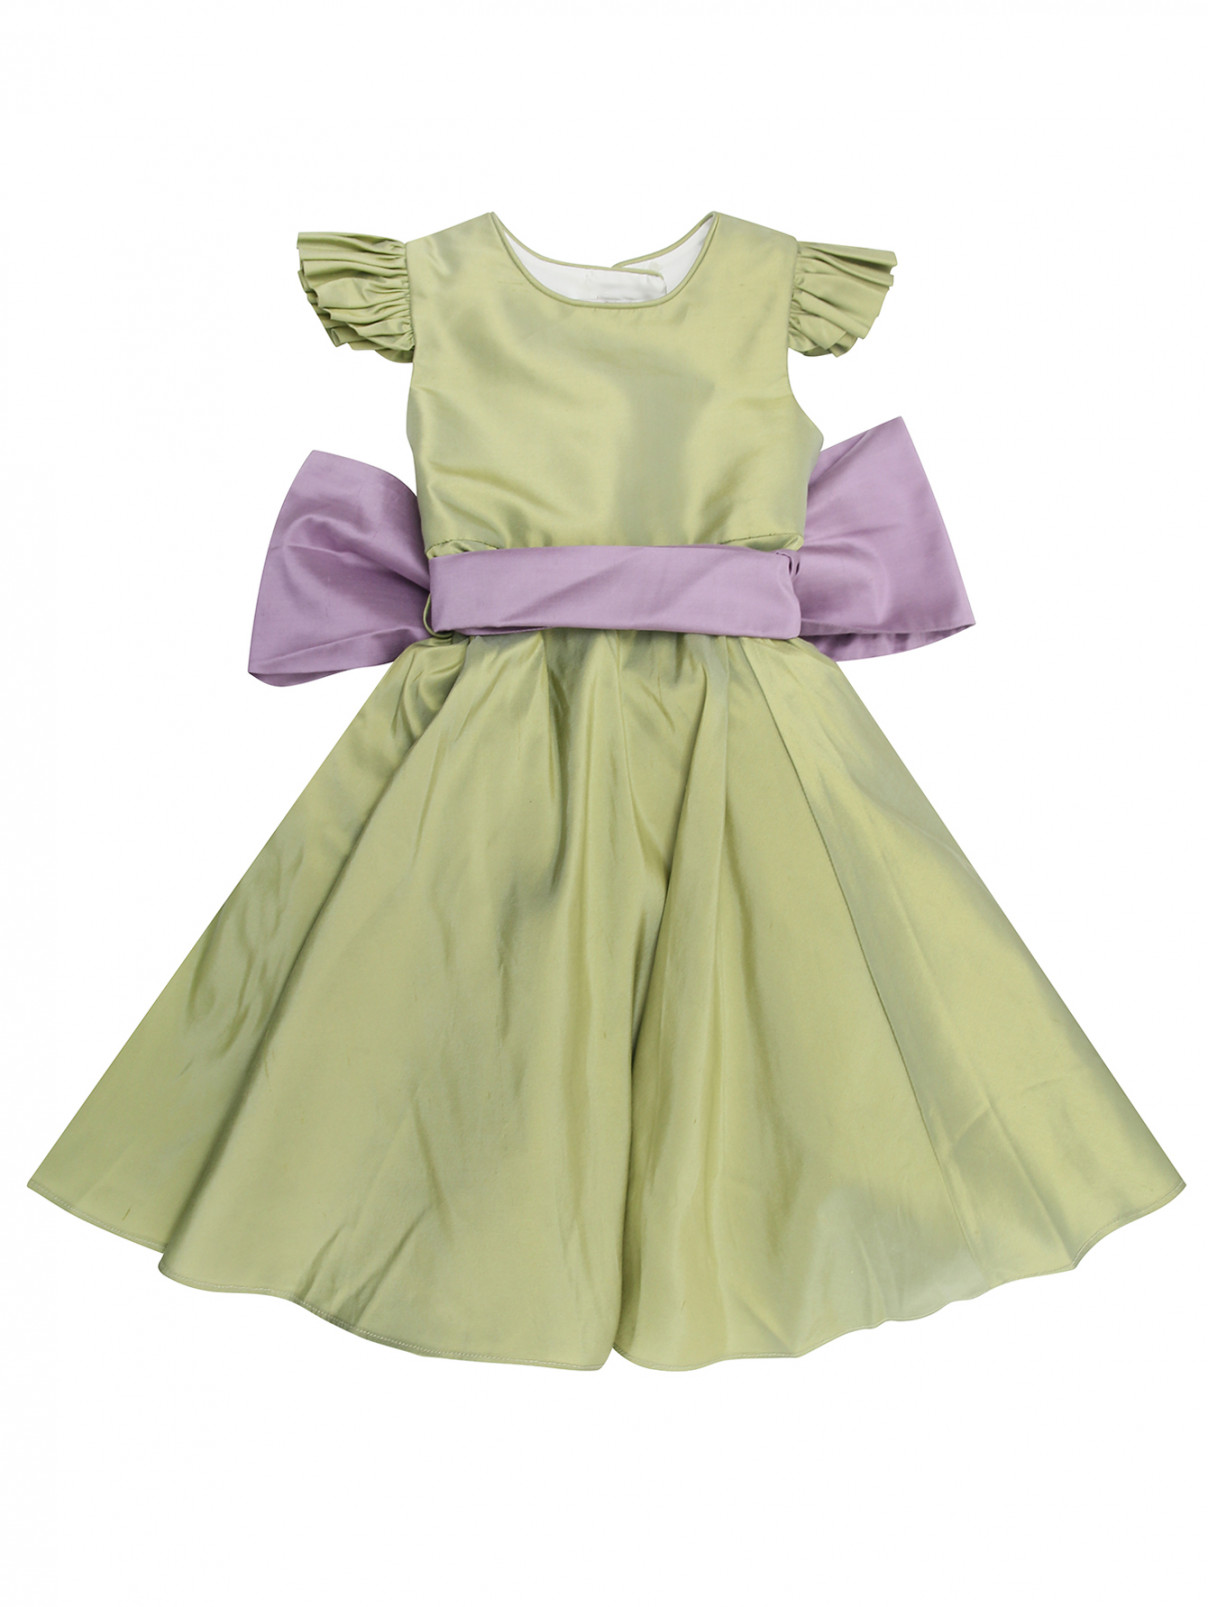 Шелковое платье с пышной юбкой Nicki Macfarlane  –  Общий вид  – Цвет:  Зеленый